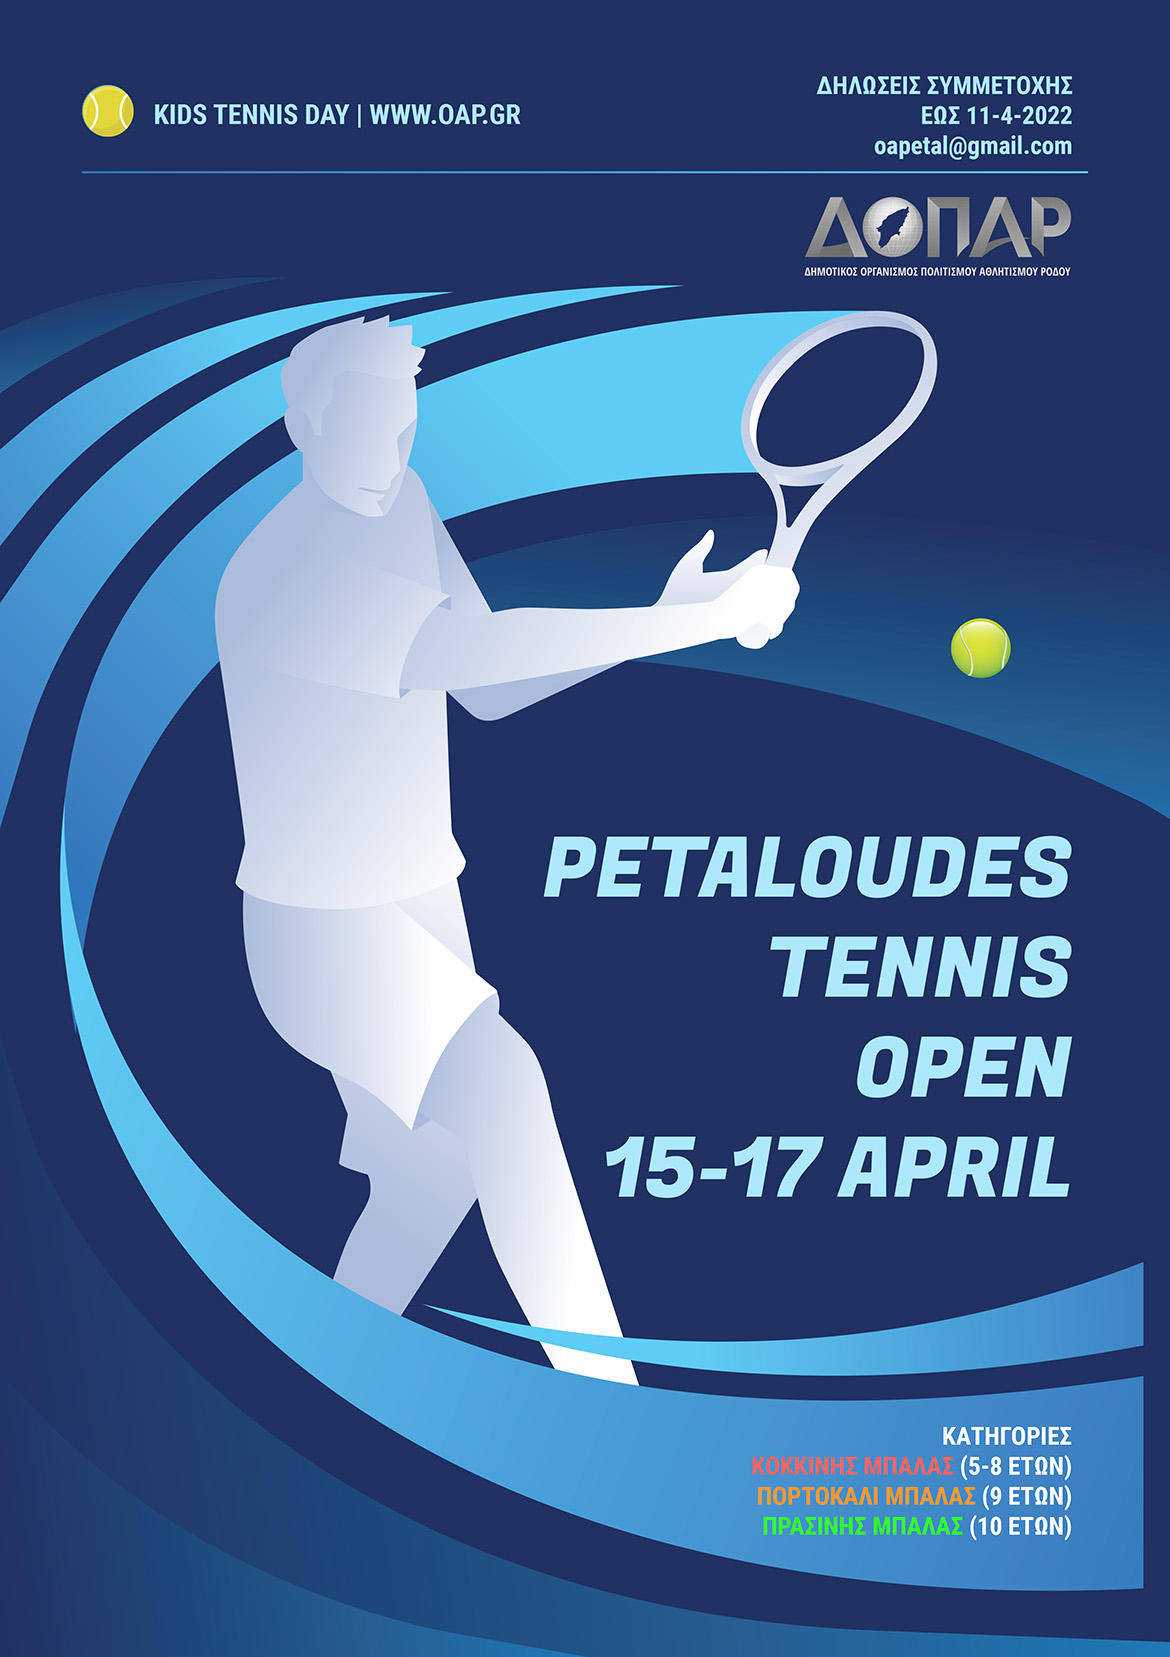 Petaloudes Tennis Open